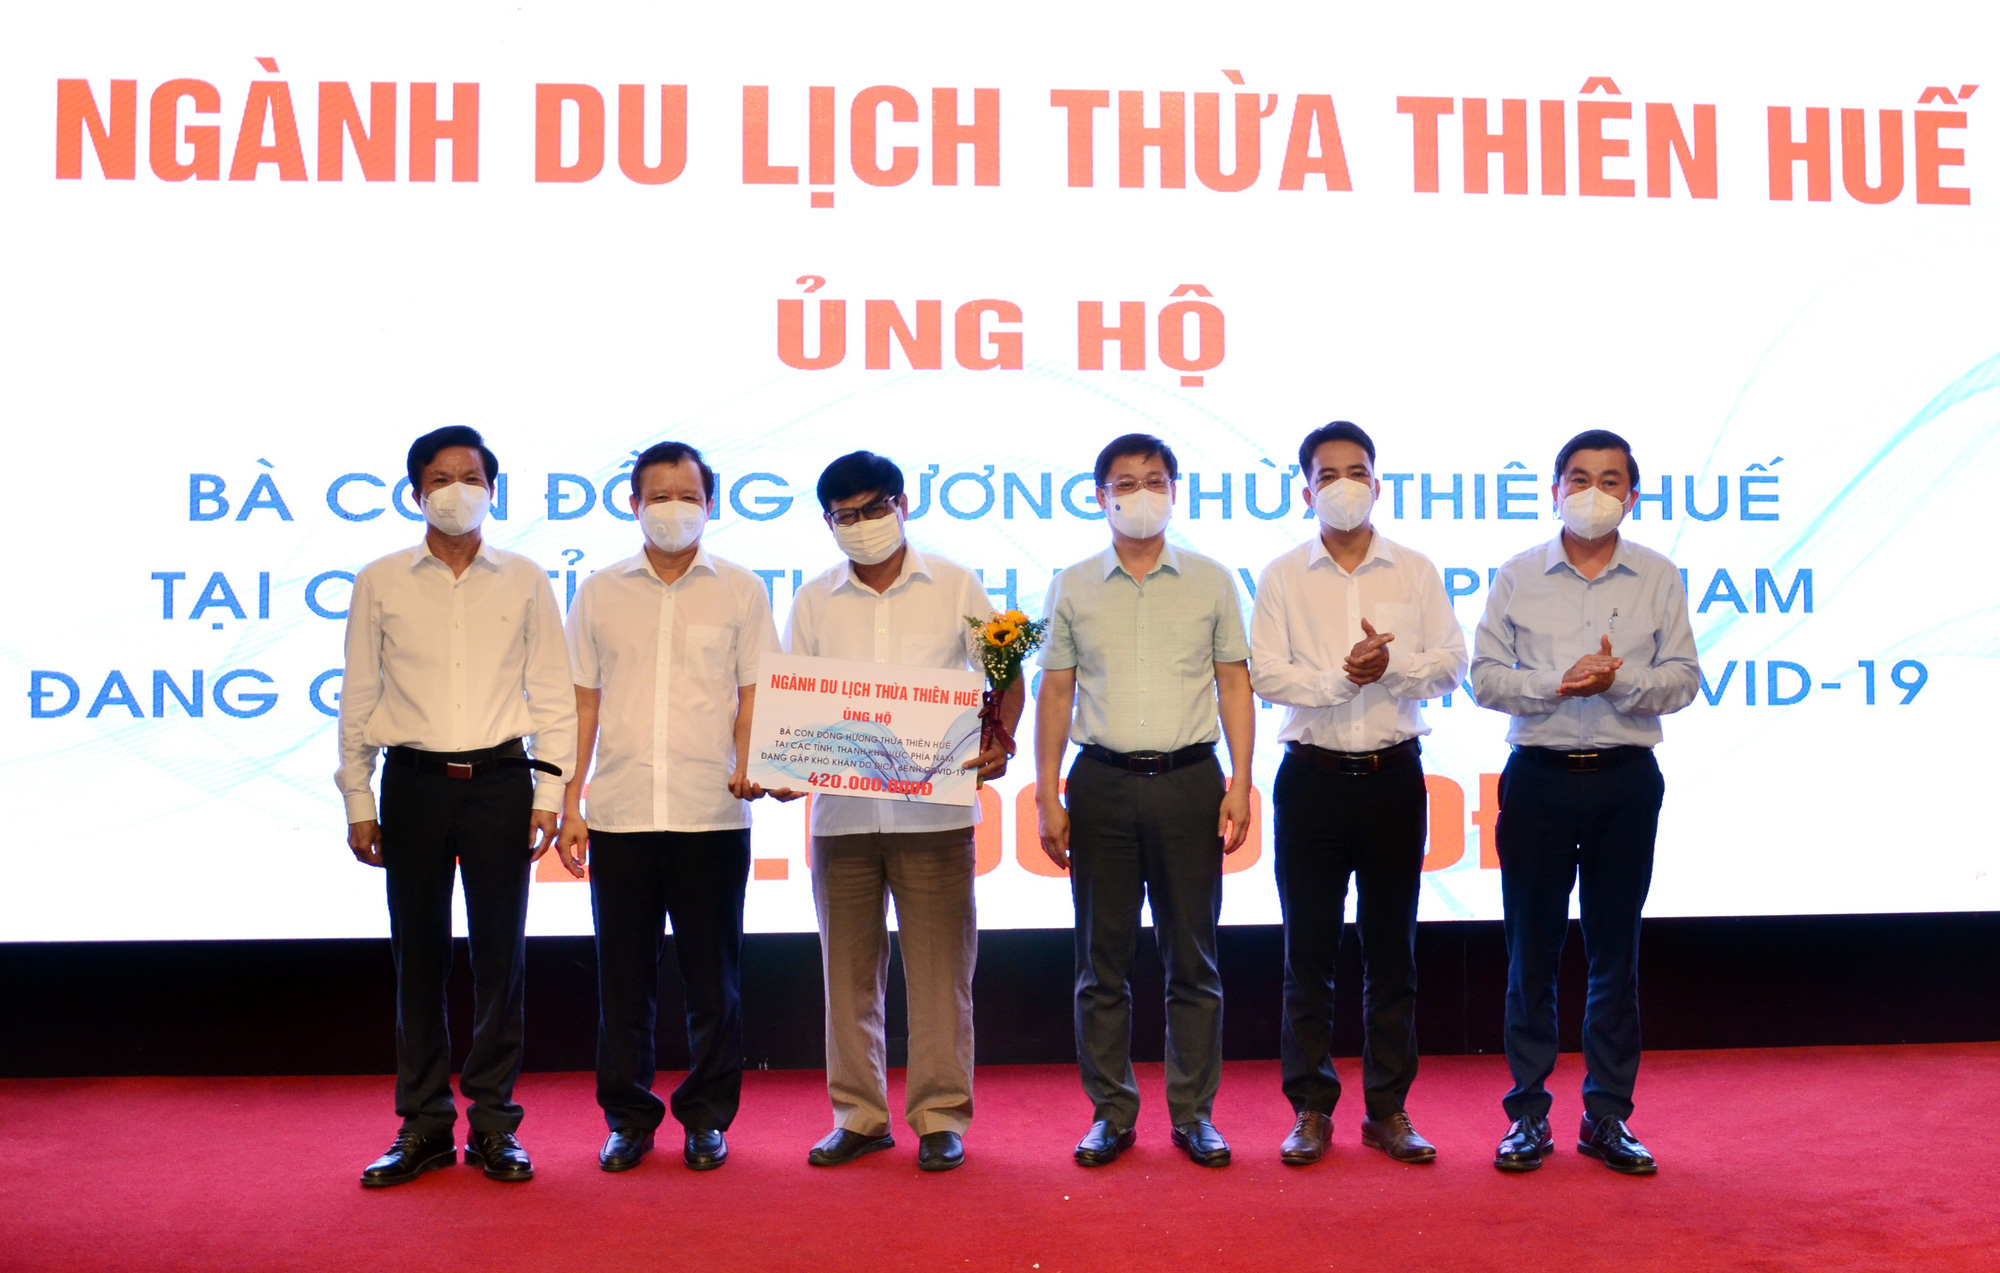 Ngành du lịch Thừa Thiên Huế phát động ủng hộ người dân khó khăn do dịch bệnh COVID-19 - Ảnh 1.